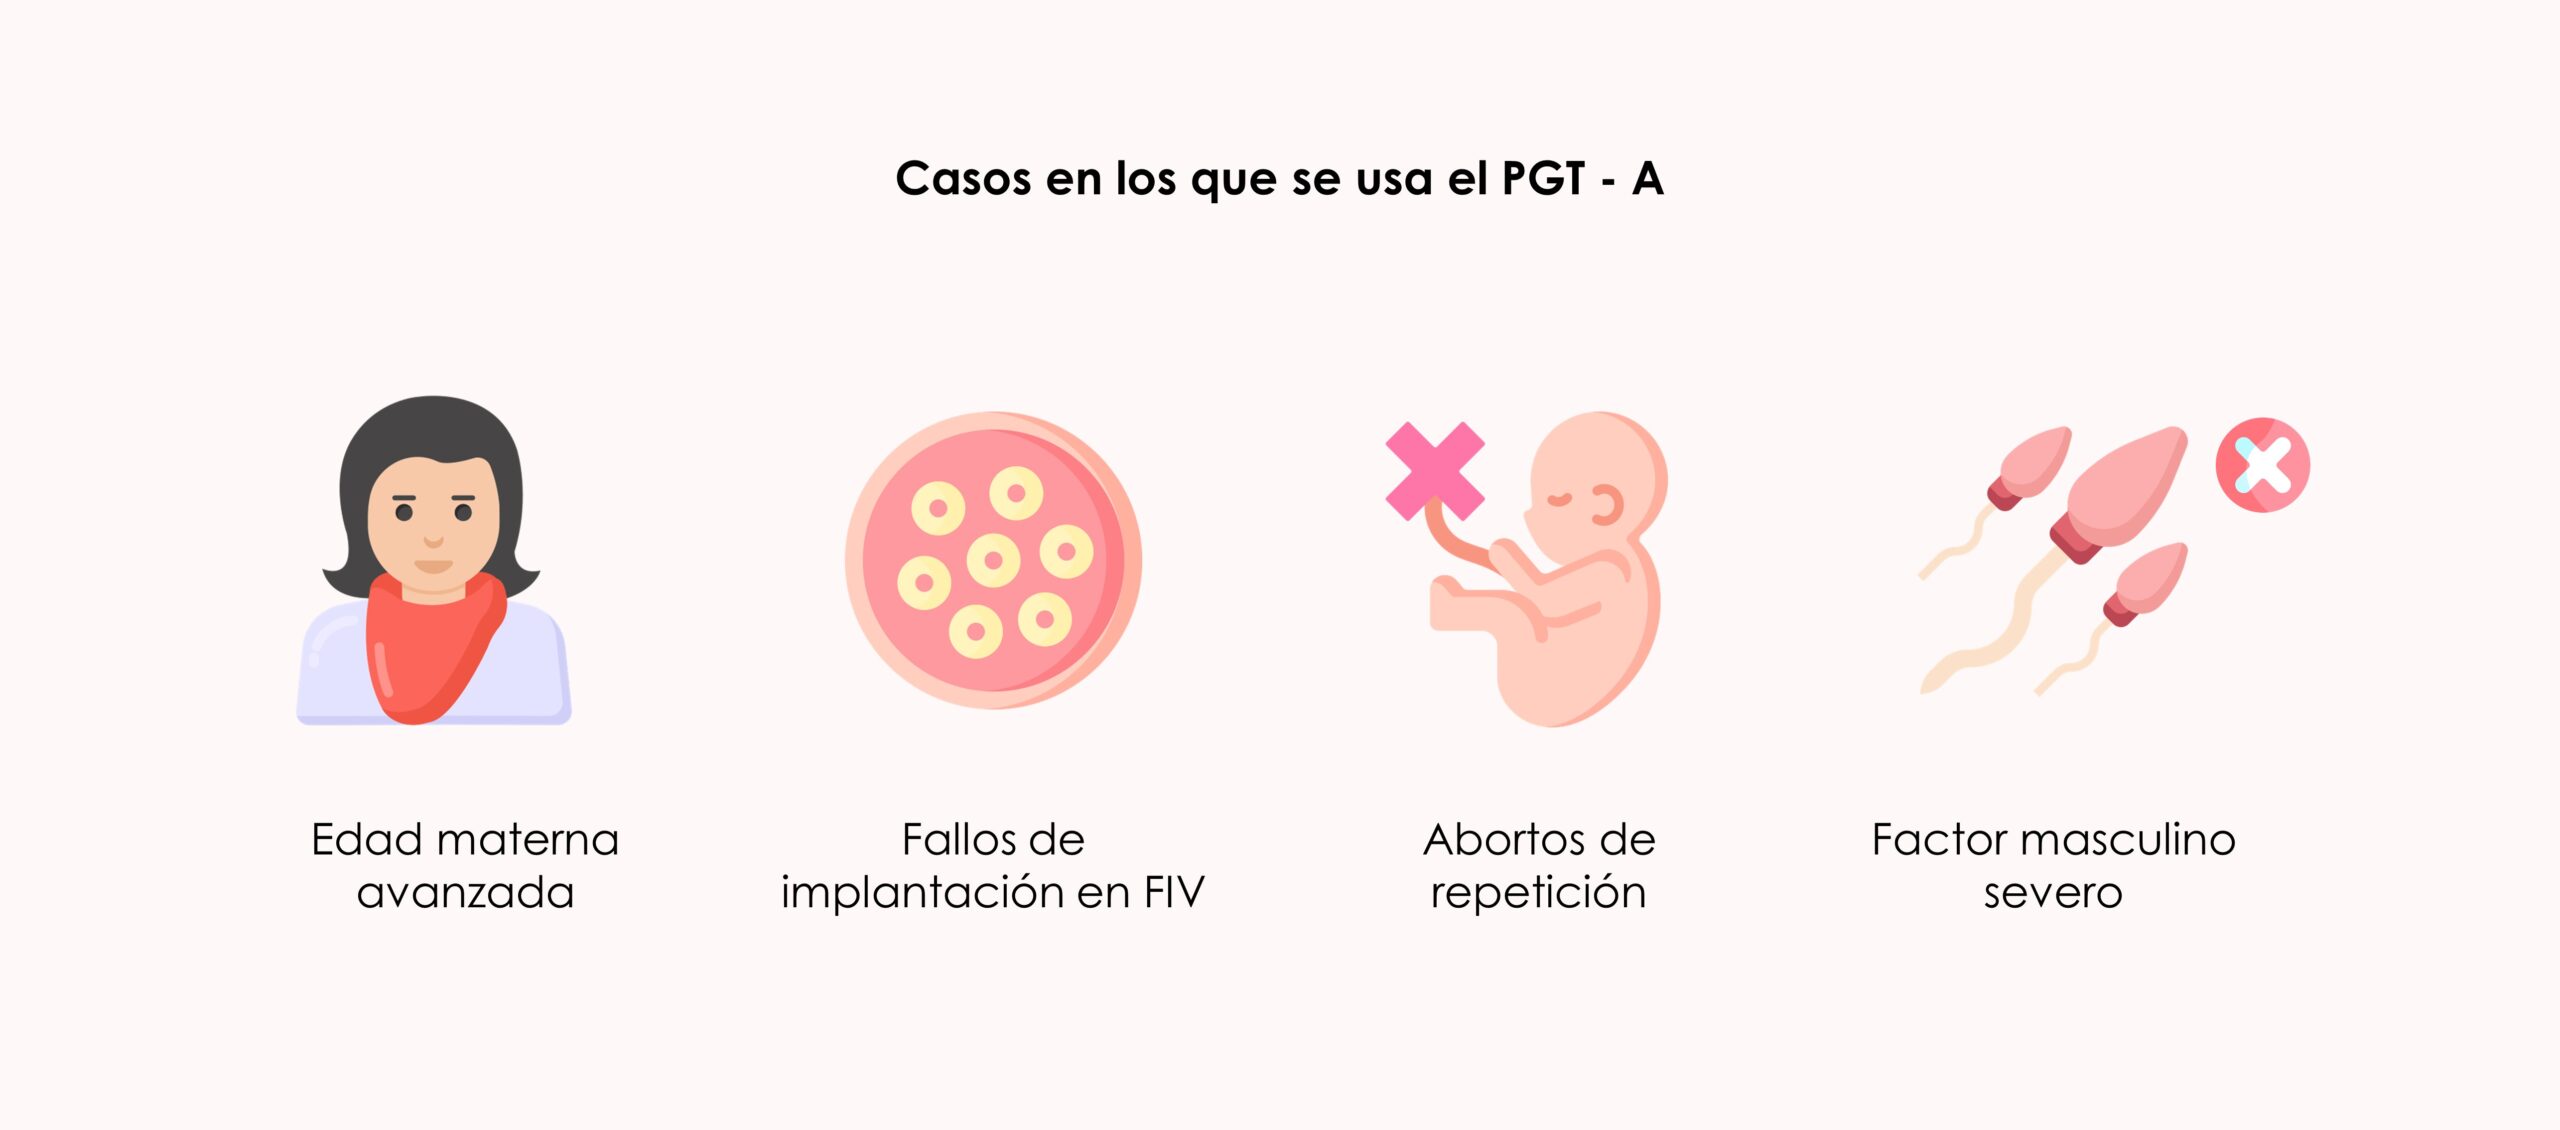 paso a paso un tratamiento de fecundación in vitro con PGT